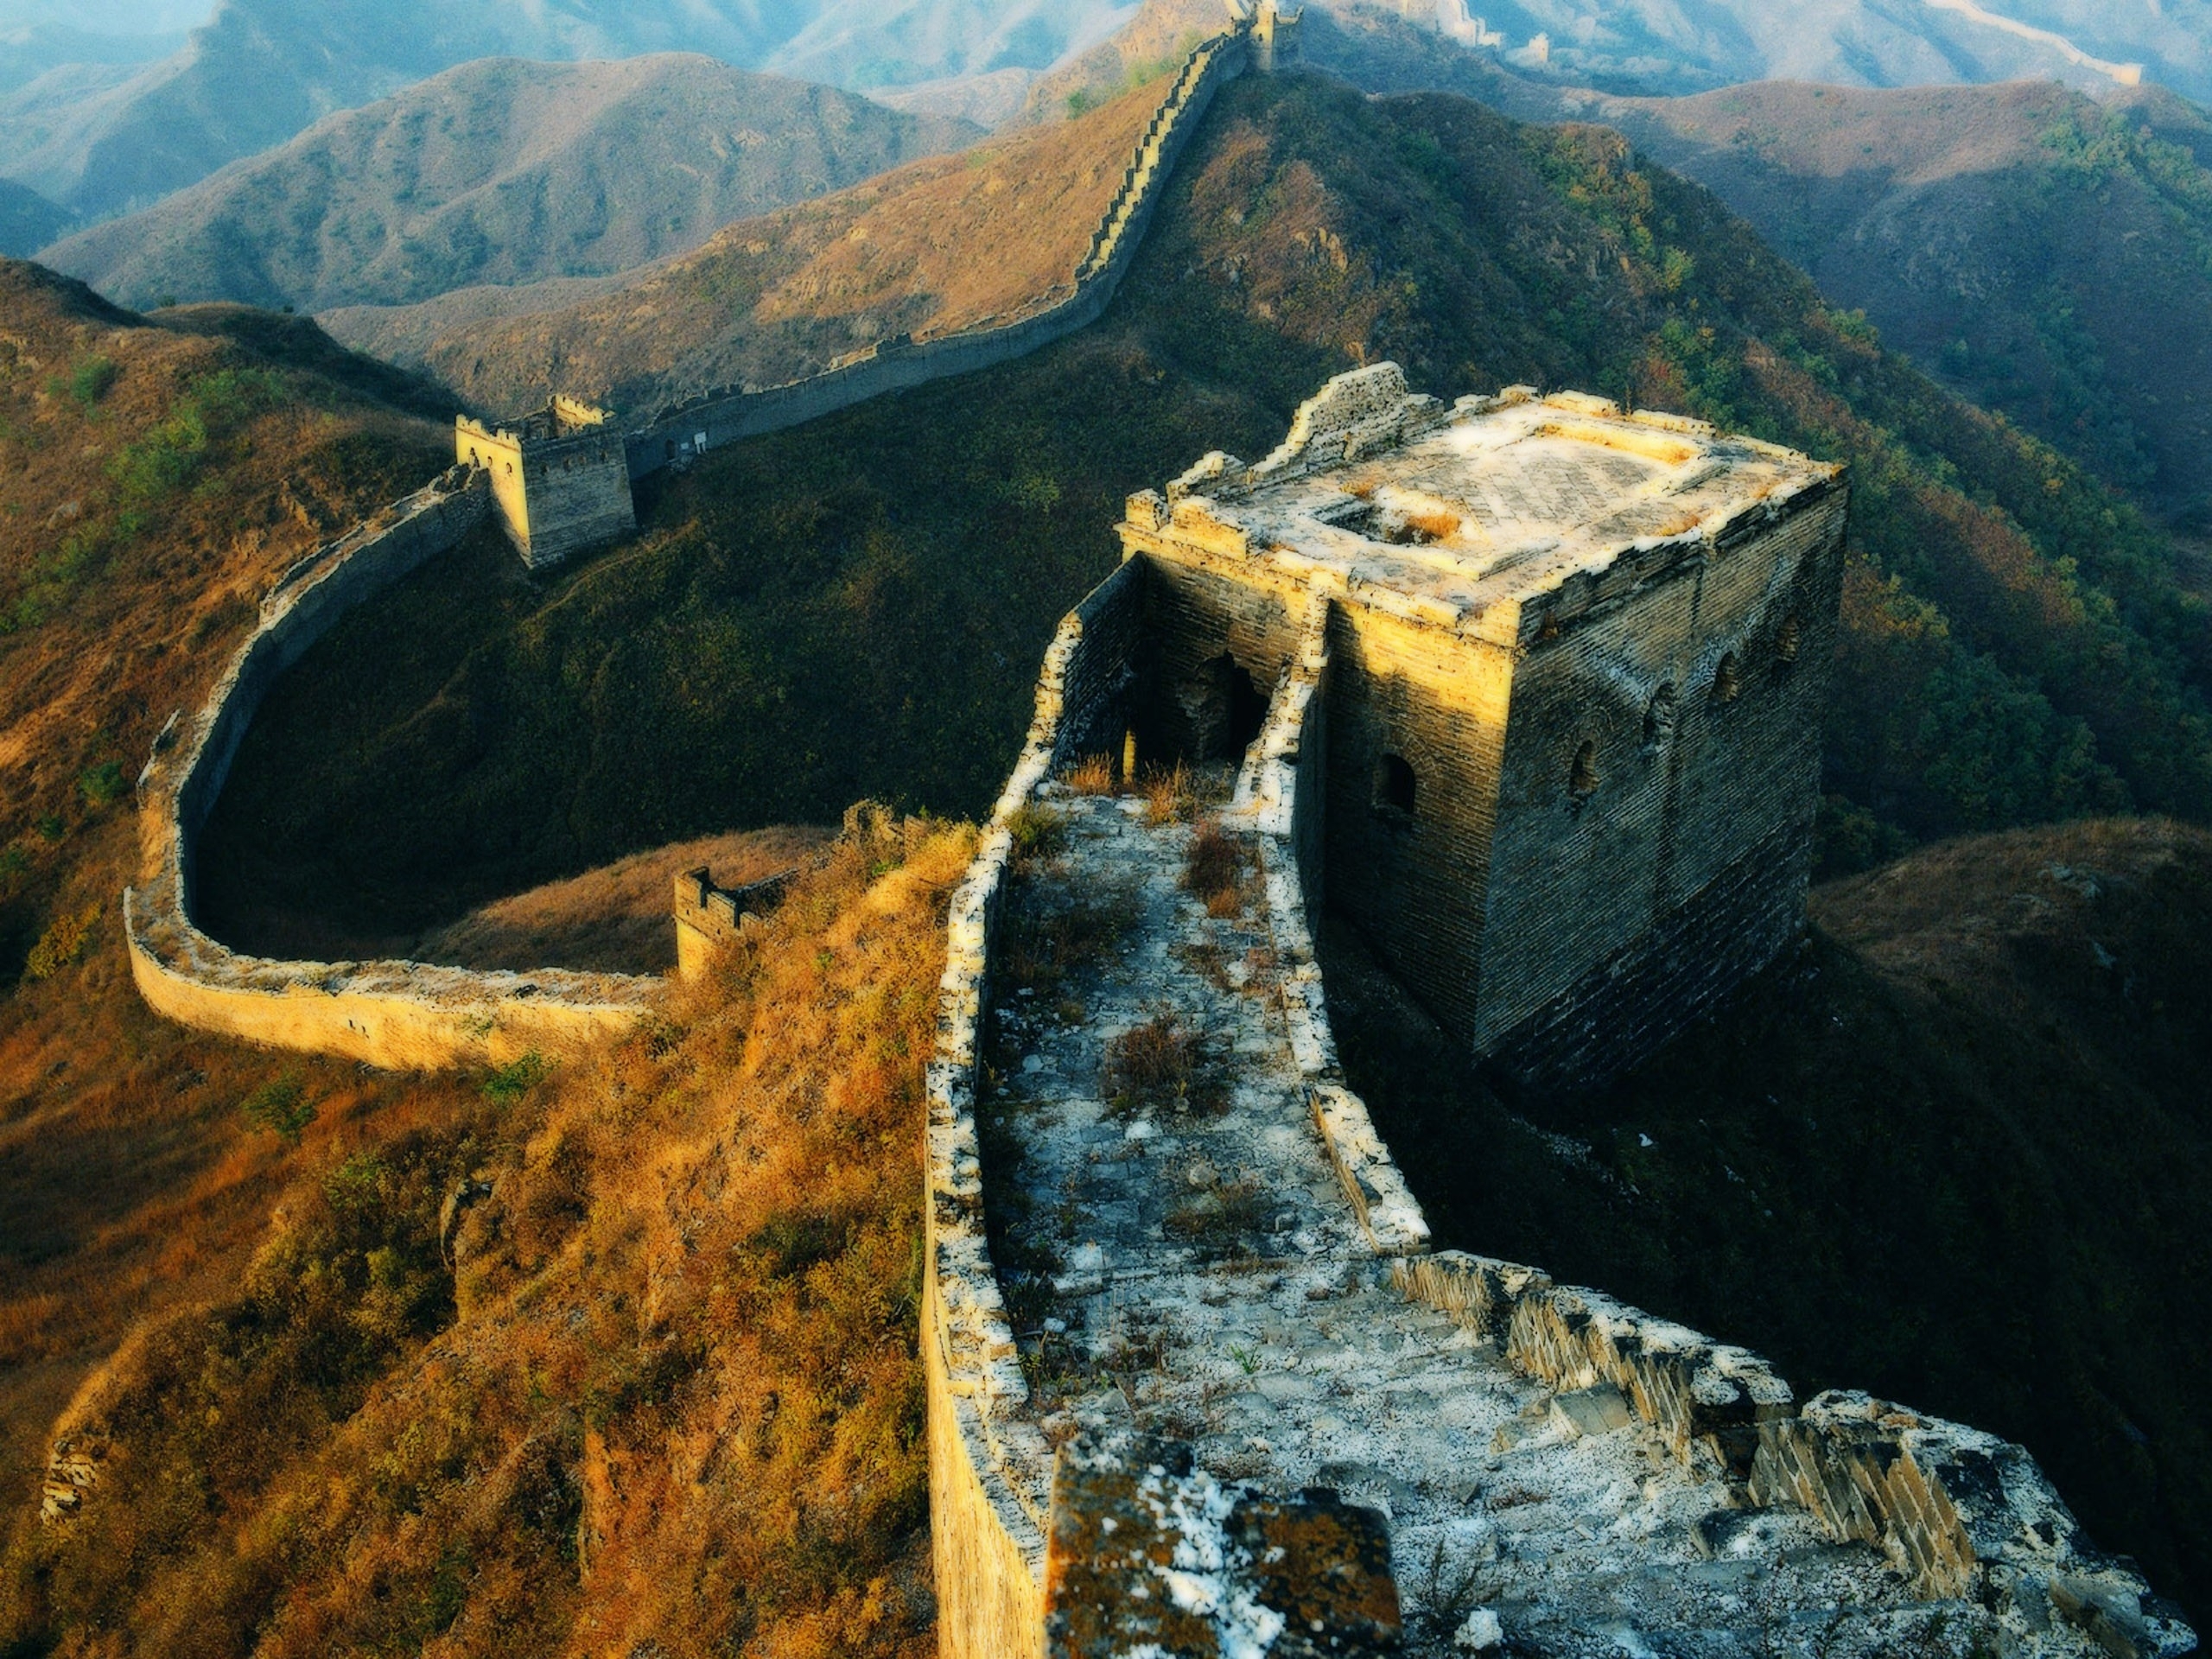 Строение китайской стены. Великая китайская стена бойницы. Великая китайская стена цинхай. Башни и бойницы Великой китайской стены. Еликаякитайская стена.